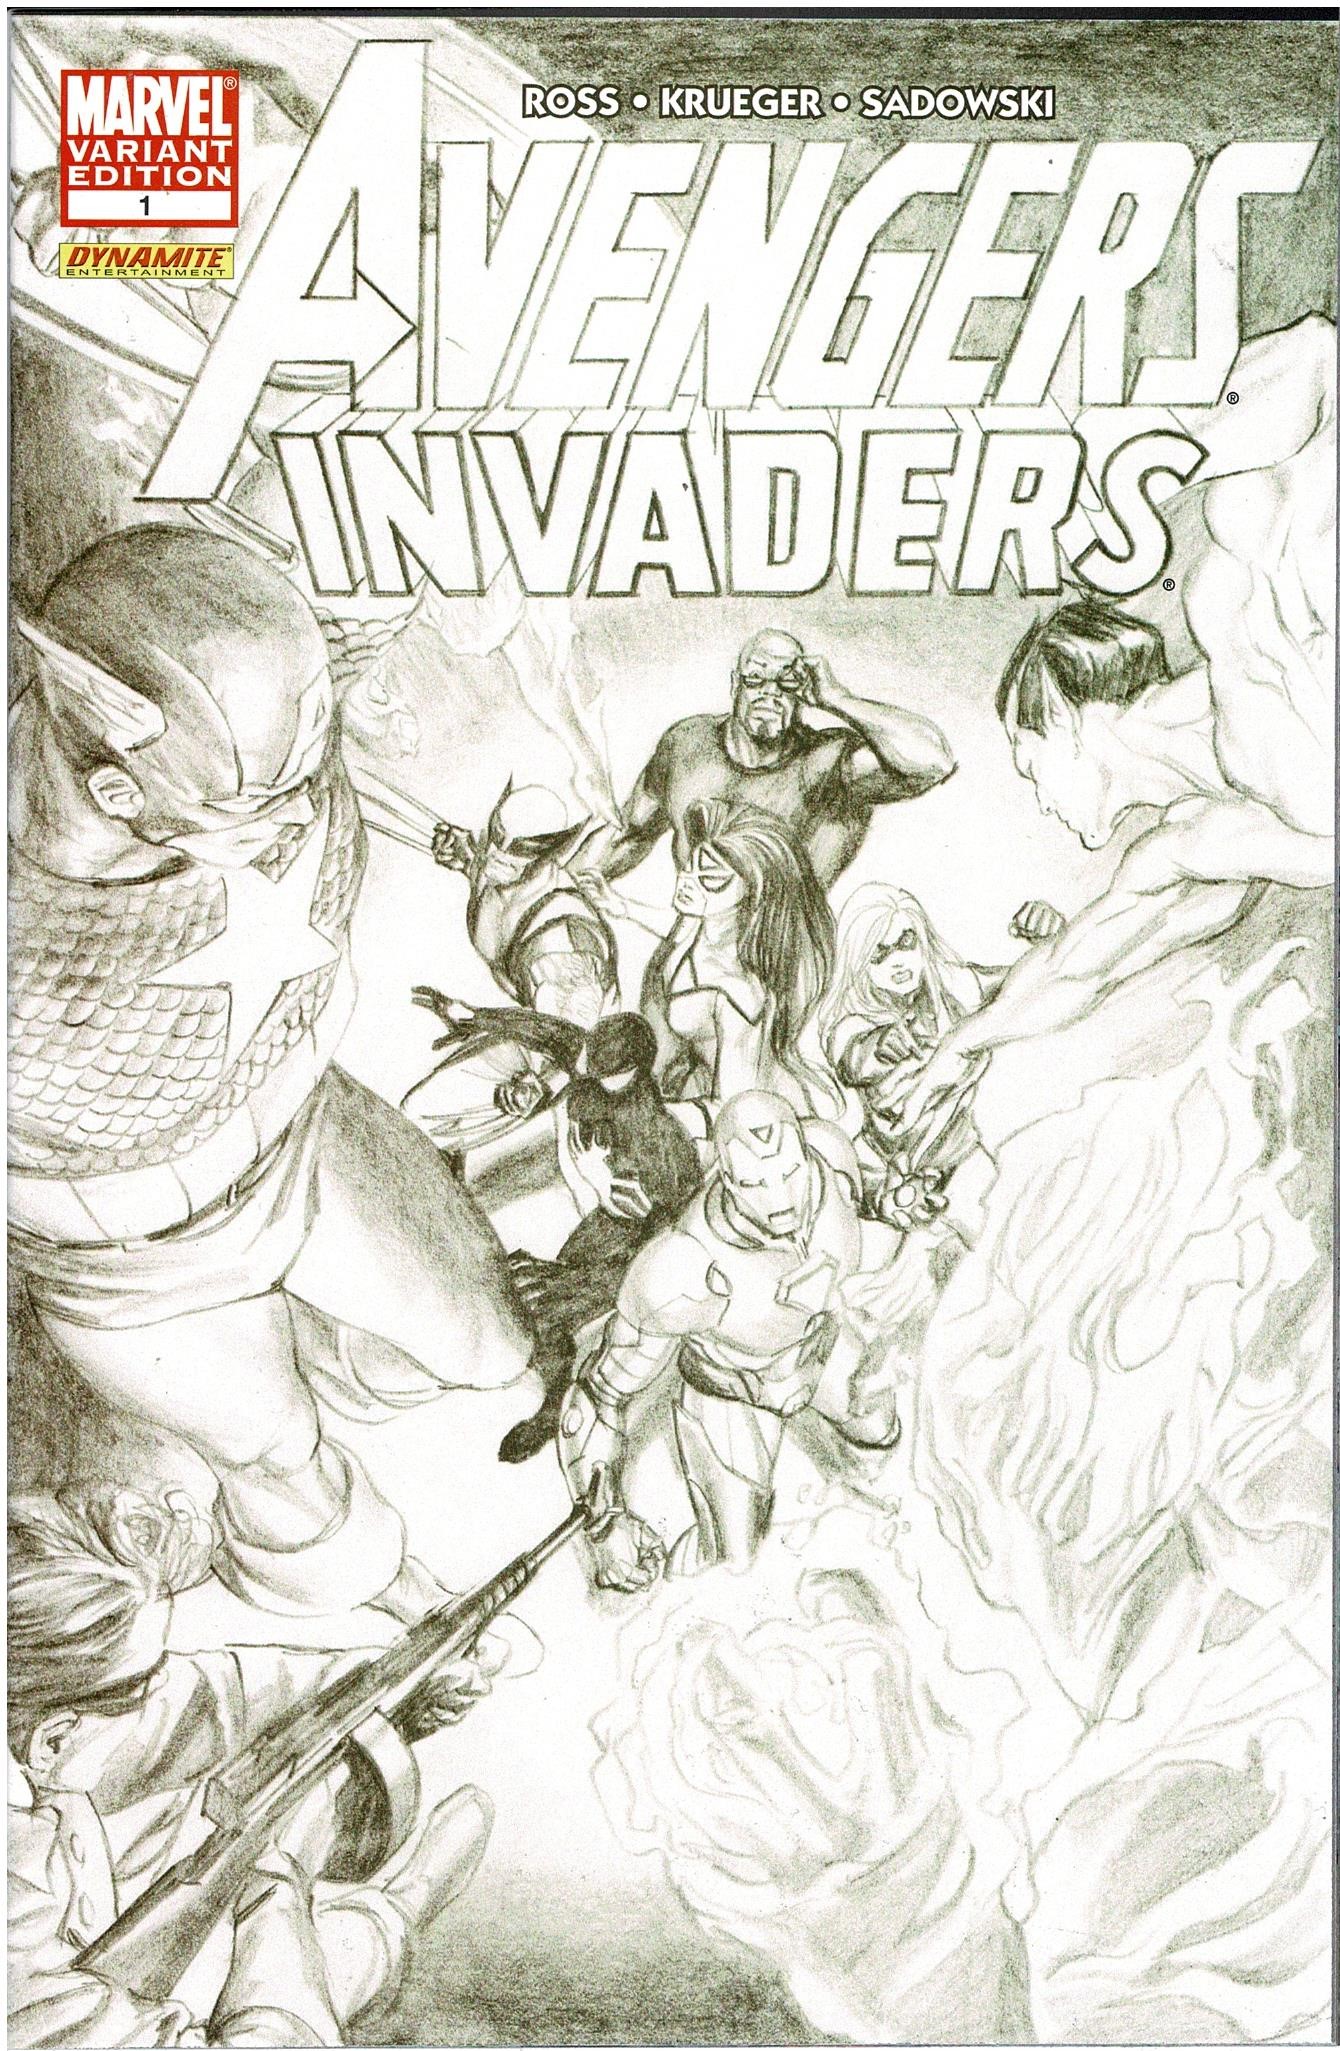 Avengers Invaders #1 Ross Variant